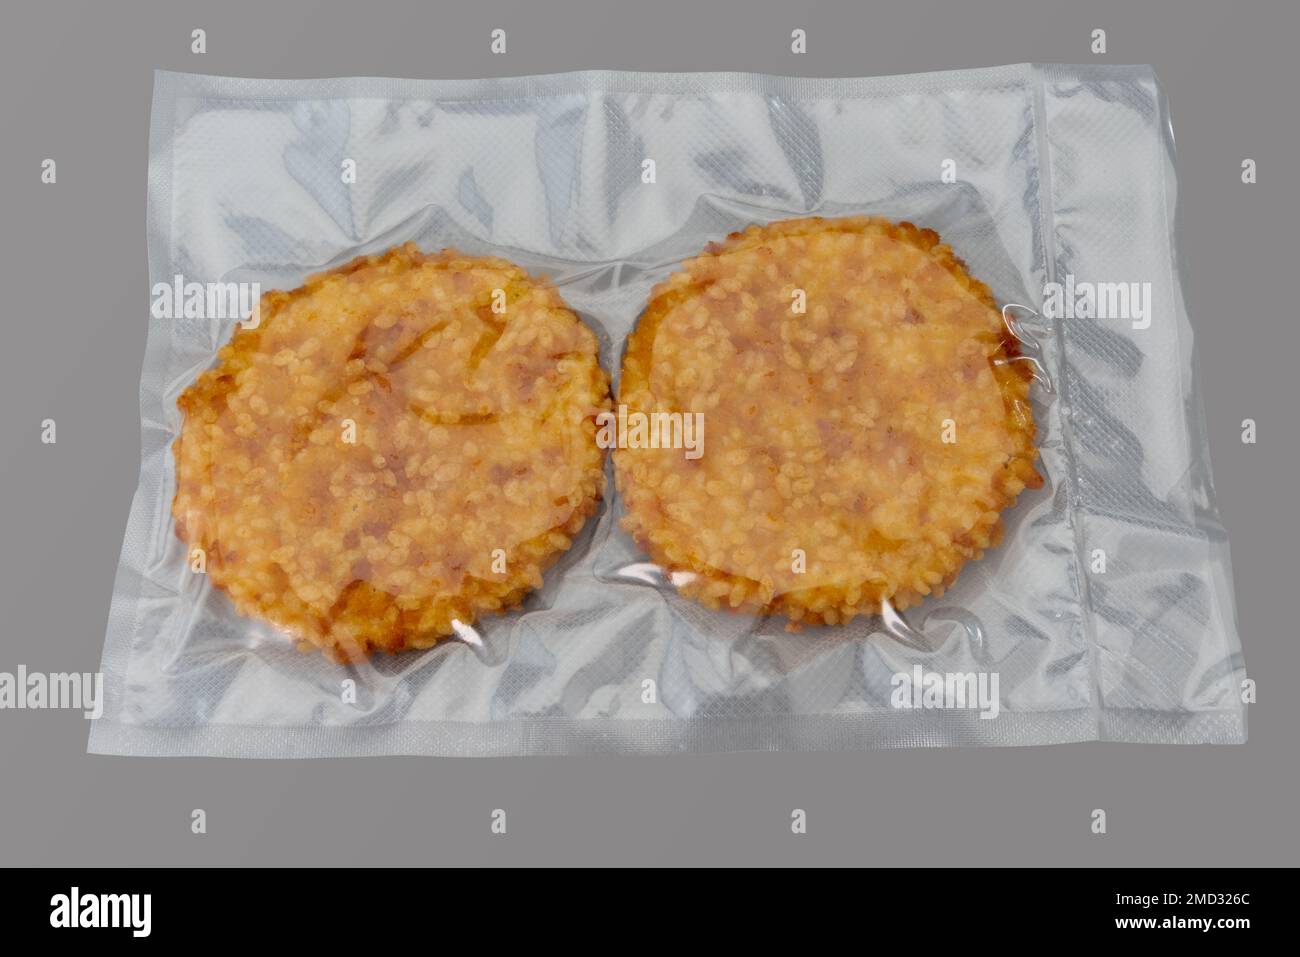 Hamburger impanato con filetto di pollo confezionato sottovuoto sigillato per una cucina sous vide isolata su sfondo grigio in vista dall'alto Foto Stock